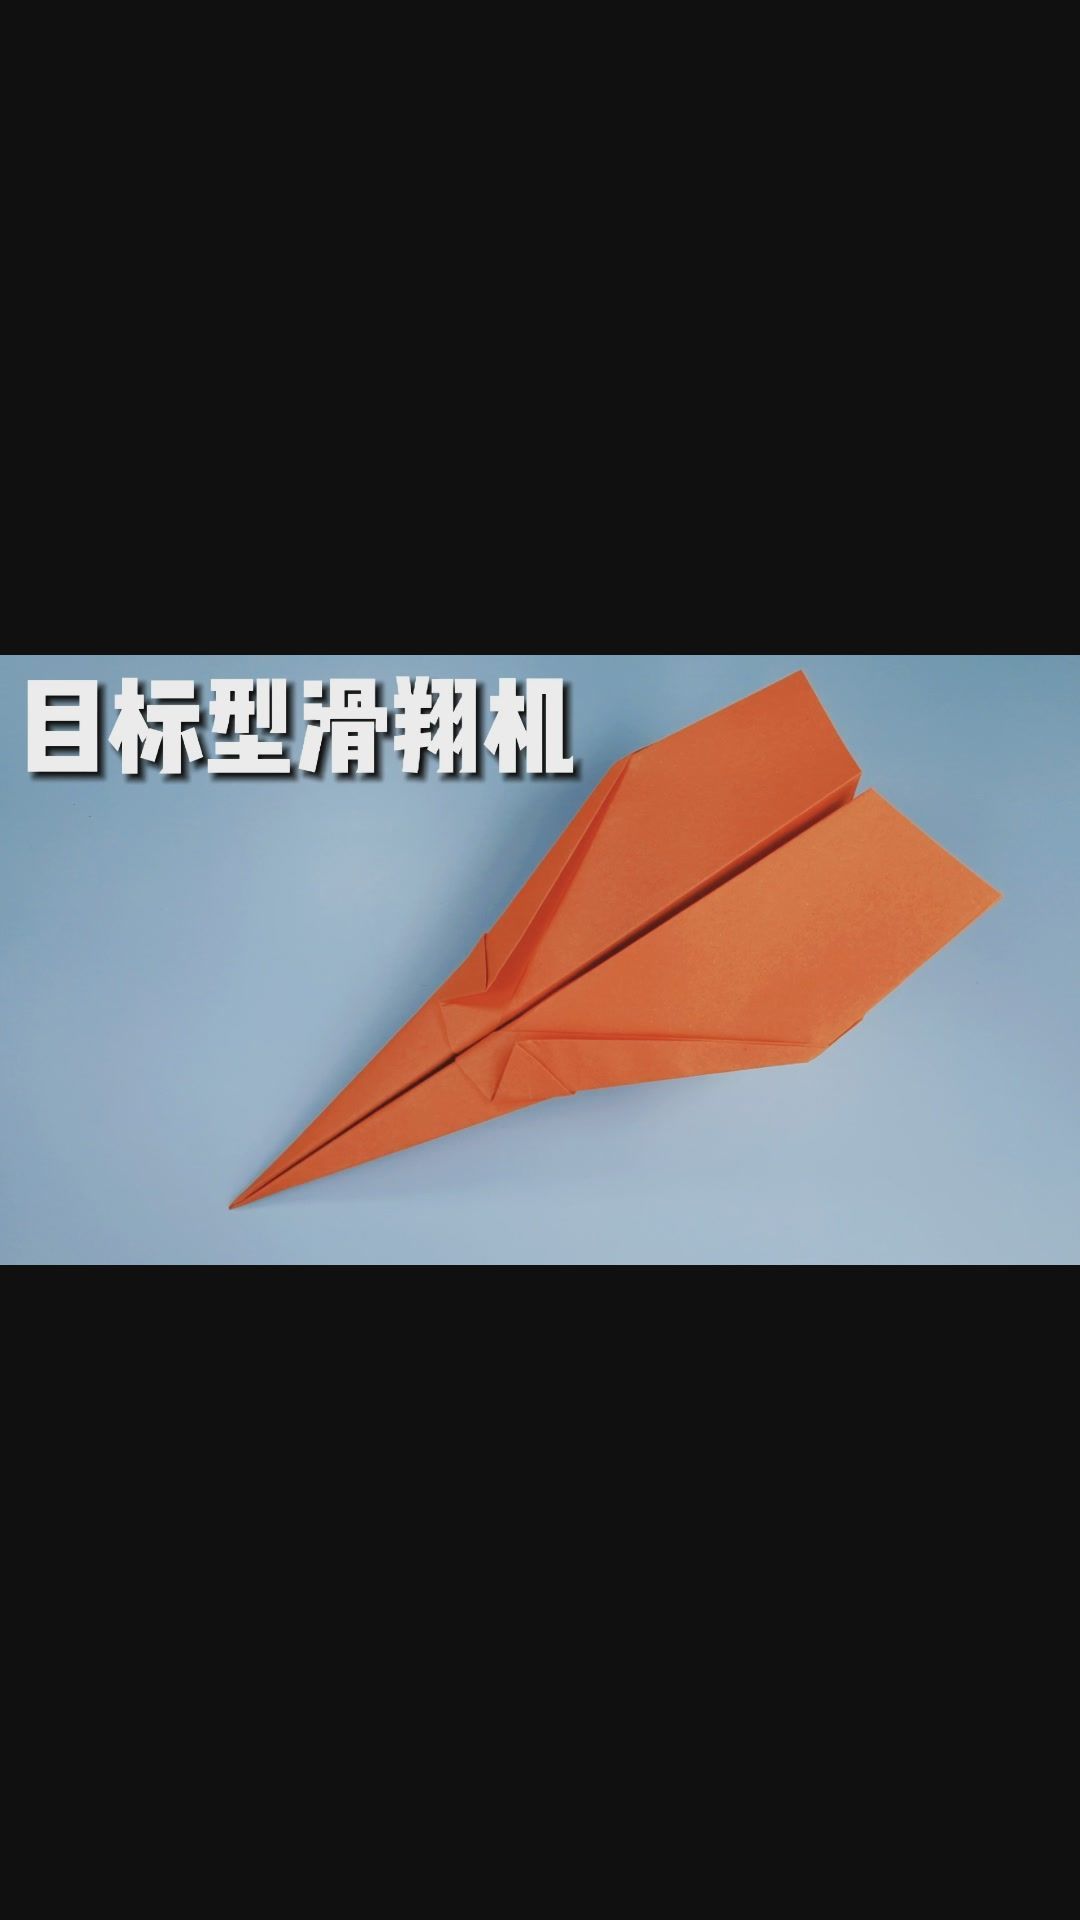 [纸飞机苹果]纸飞机苹果注册教程